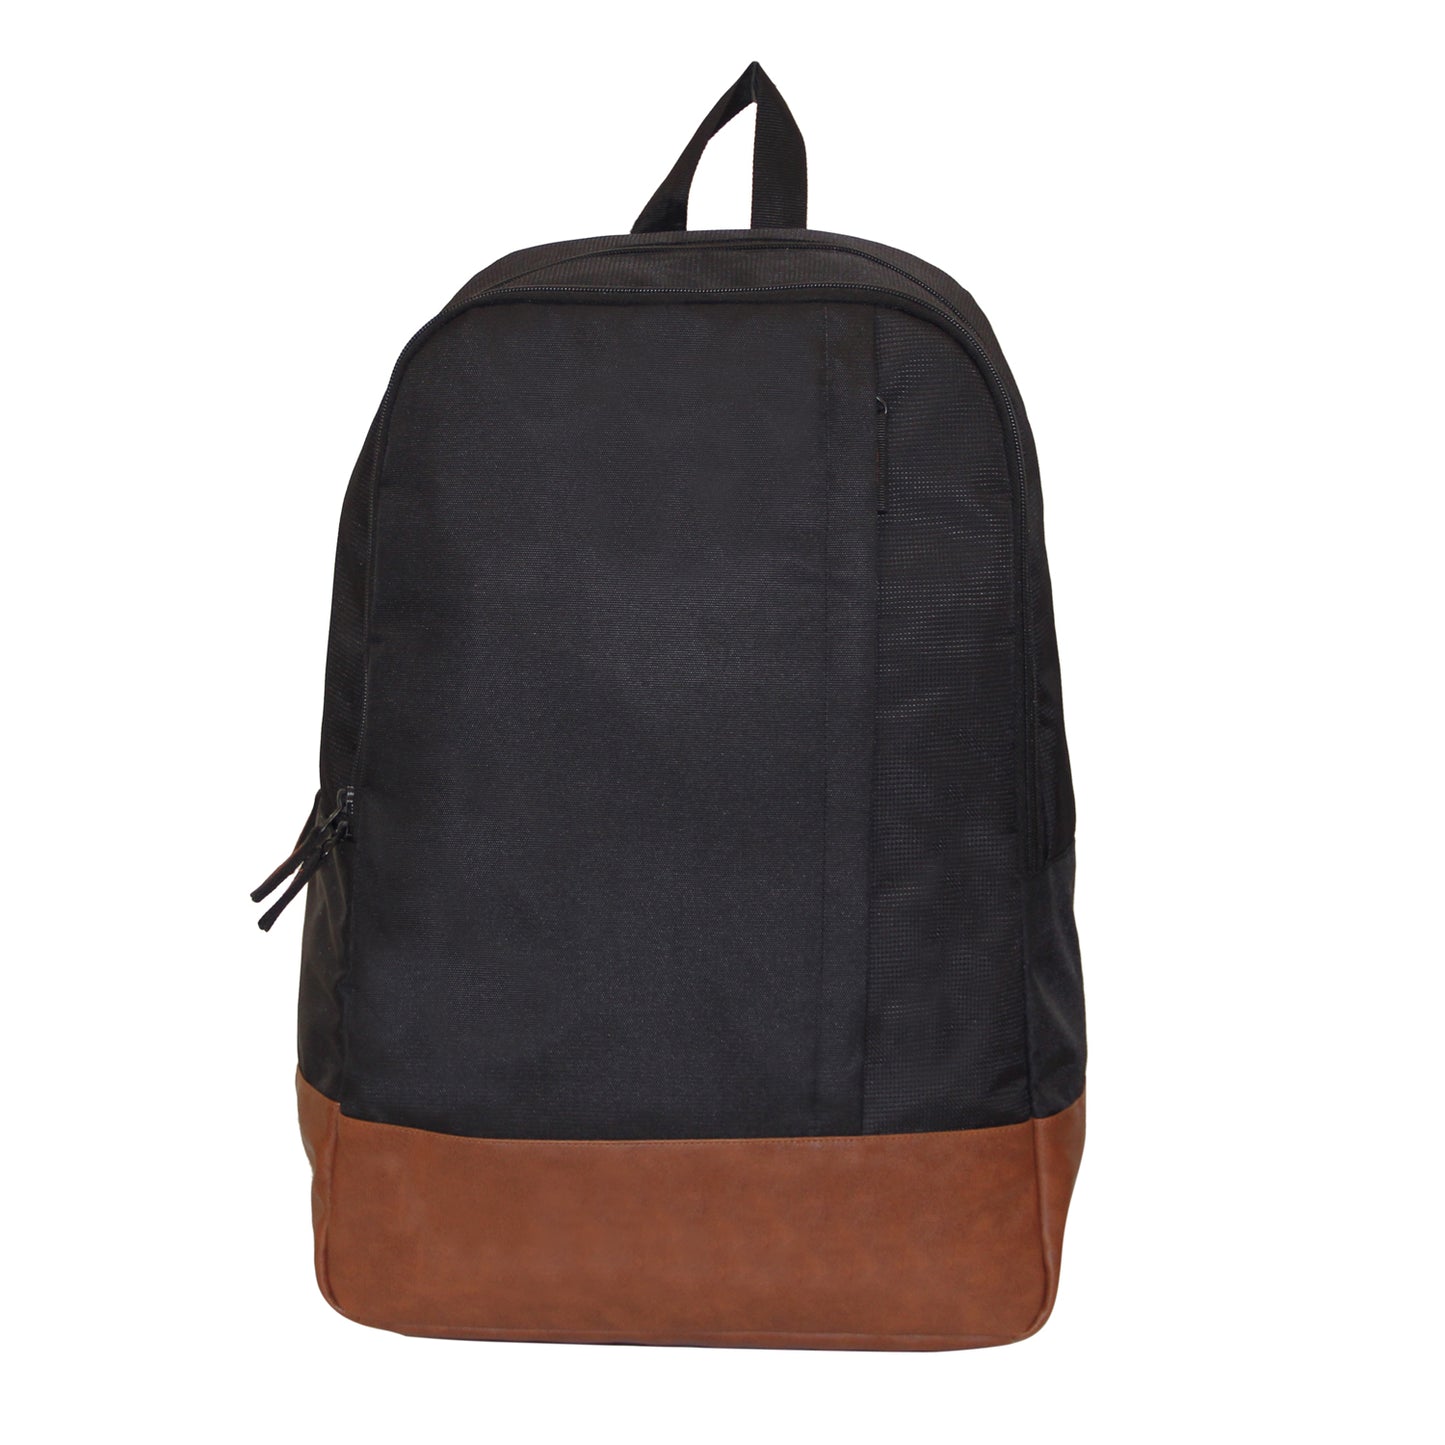 Black & Brown Backpack